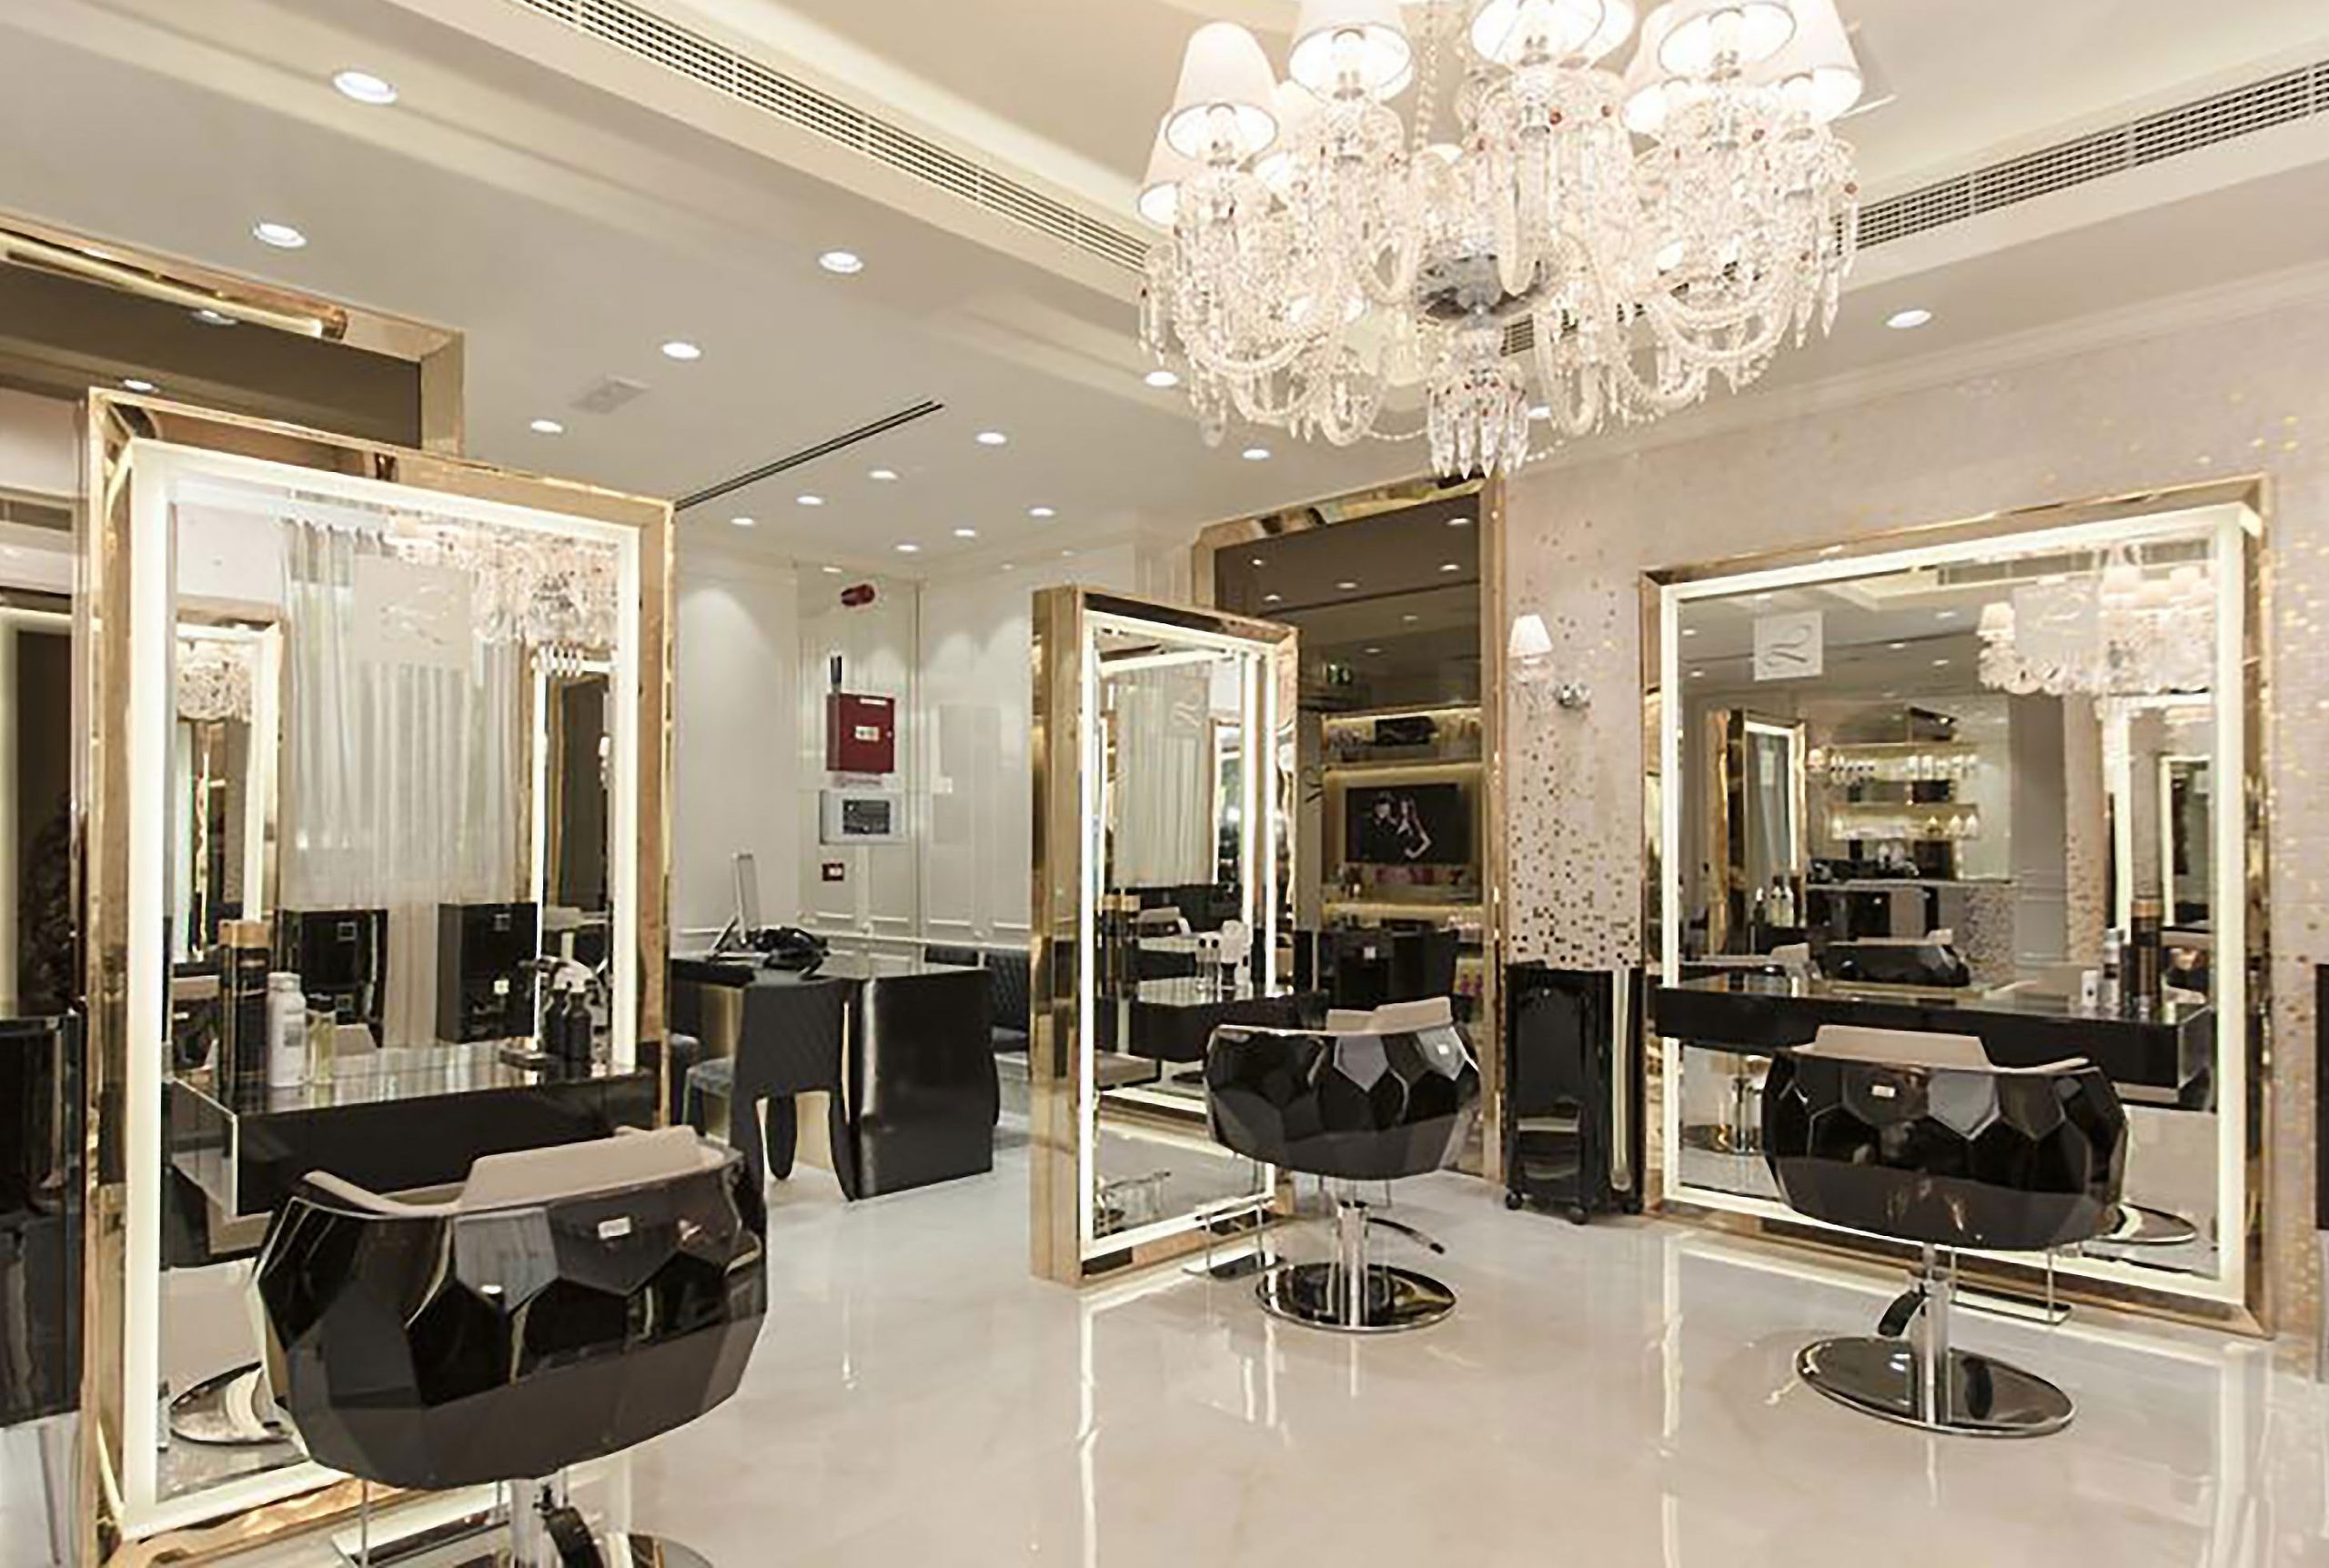 How to Book Online Hair Salon in Dubai